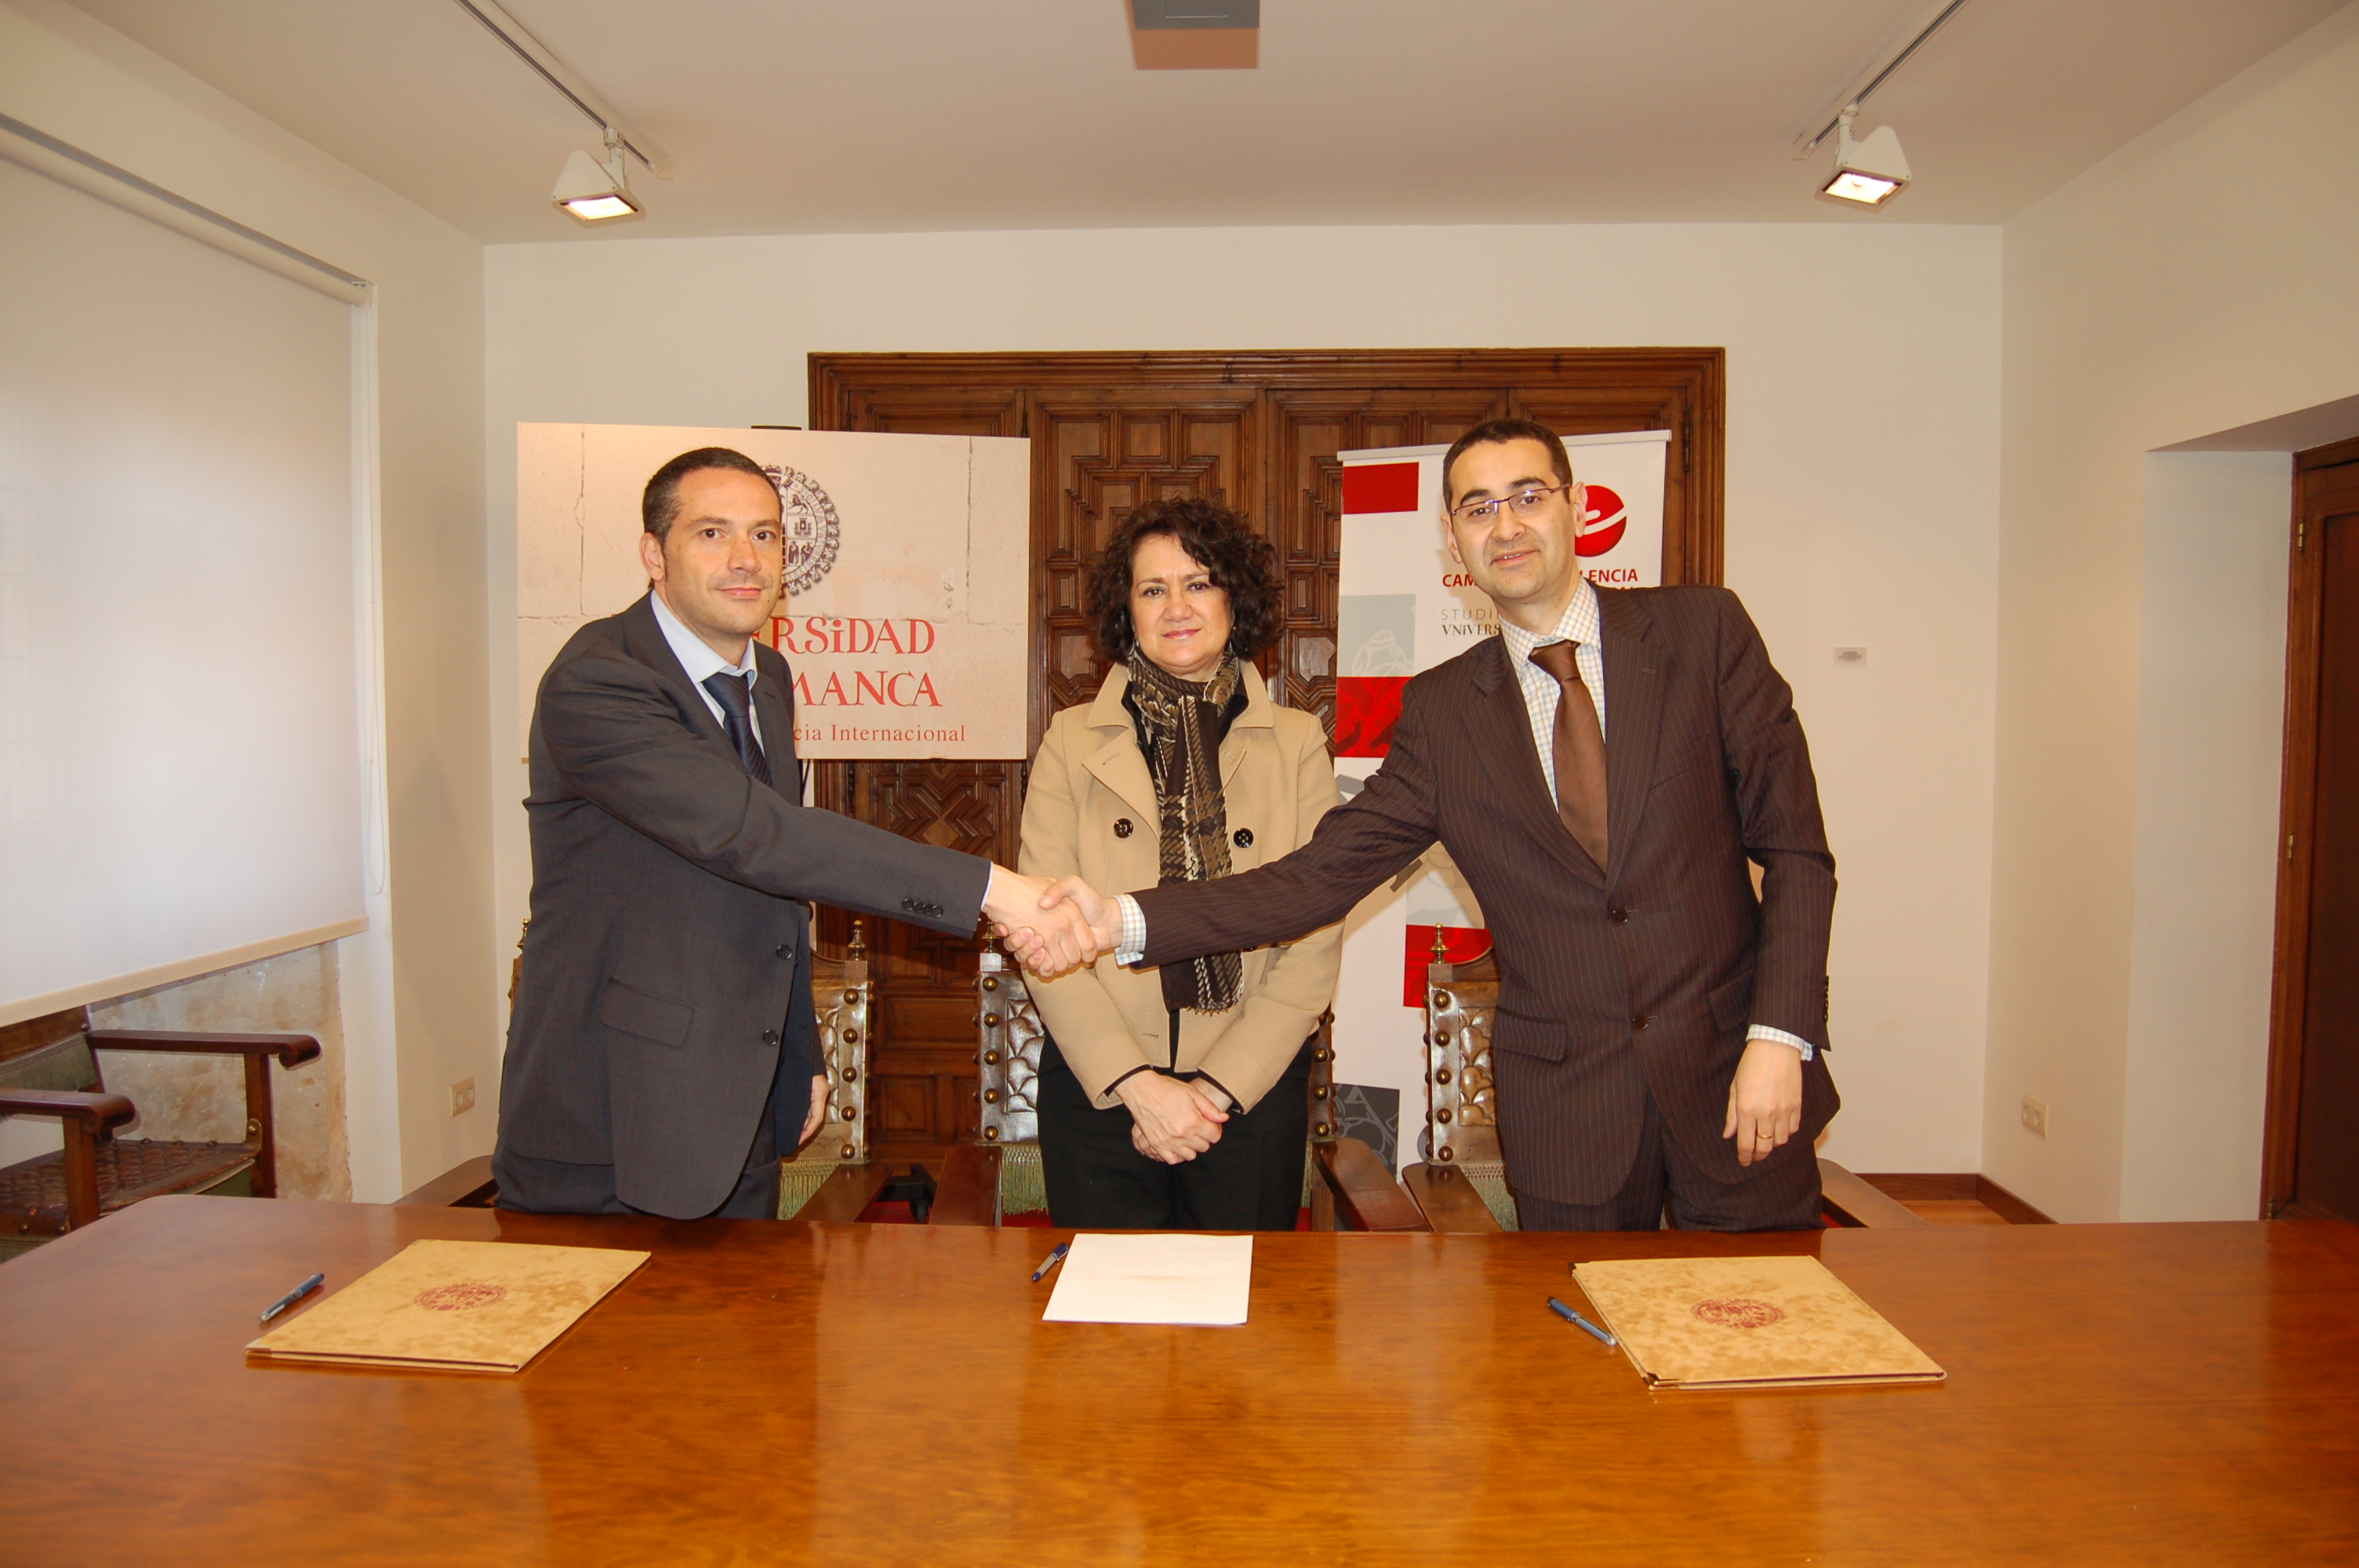 La Universidad de Salamanca suscribe un convenio de colaboración con la empresa Idimás Gestión